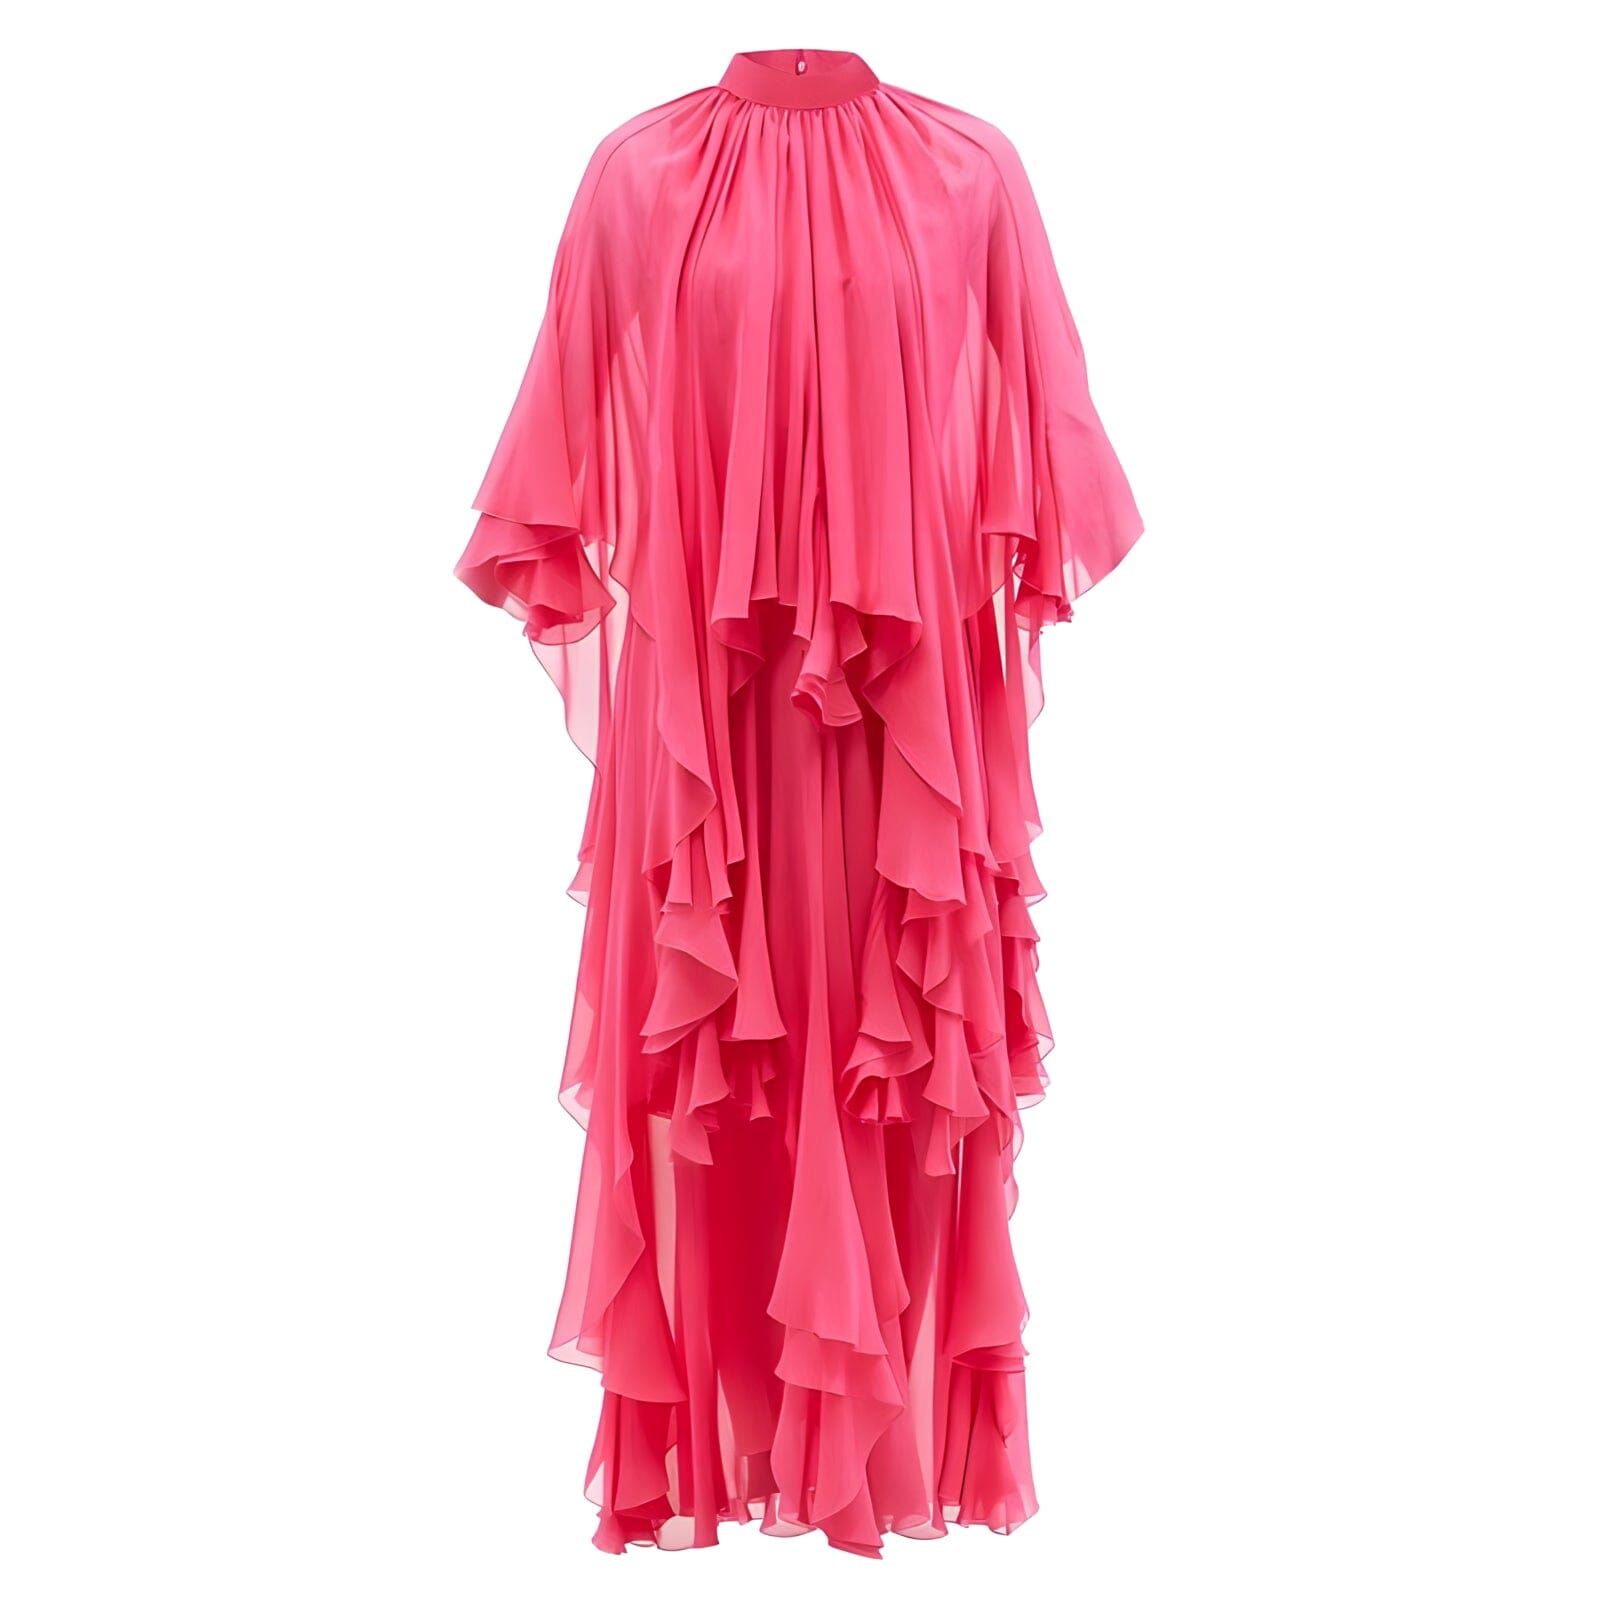 The Danielle Short Sleeve Pleated Maxi Dress 0 SA Styles S 